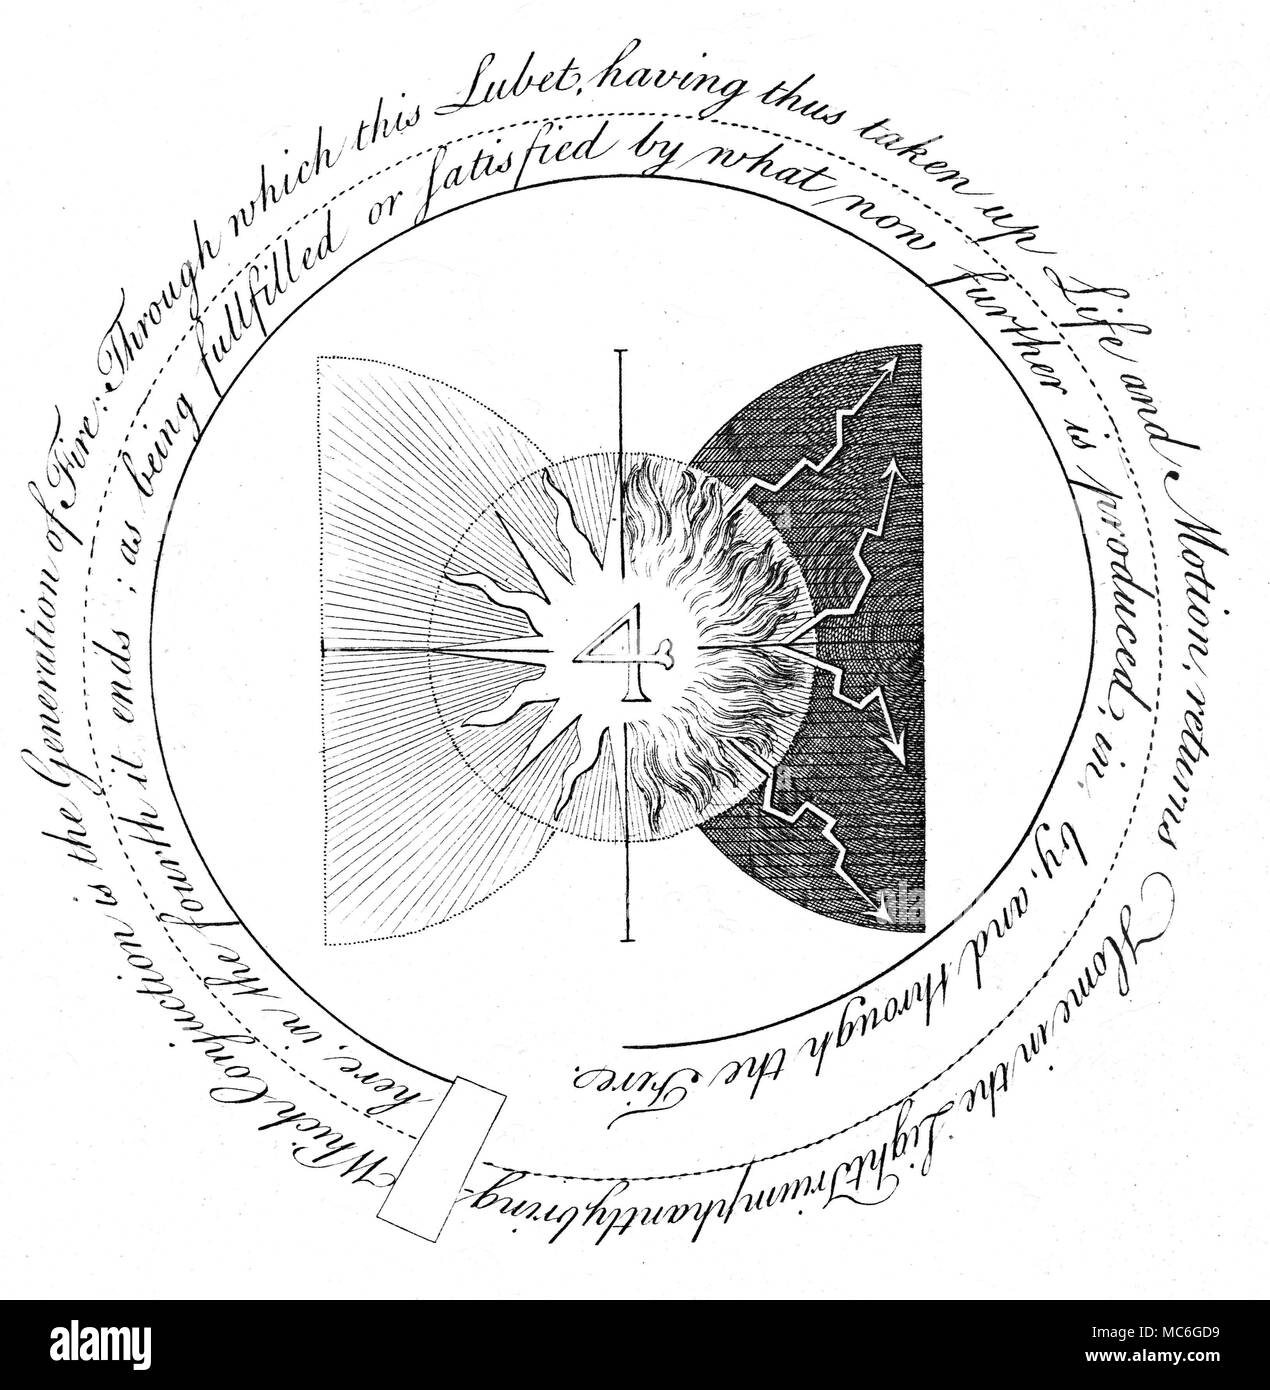 - Symboles de l'ART occulte - Rose-croix SPIRALES - l'un d'une série de gravures occultes influents par William Law, à l'explication des principes de la pensée d'arcane de la Rosicrucian, Jacob Boehme, dans les Œuvres de Jacob Behmen, l'Ordre Teutonique, Theosopher Vol 1, 1764. Plaque 3, qui est une continuation du texte, en forme de spirale, de la plaque précédente, et qui montre le développement du quatrième principe, dans ce que Boehme appelle "Le Monde de feu'. Ce quatrième principe, ou bien, s'illustre comme étant un résultat de la rencontre de la lumière, et la lumière avec l'obscurité, le feu, et le feu sombre, b Banque D'Images